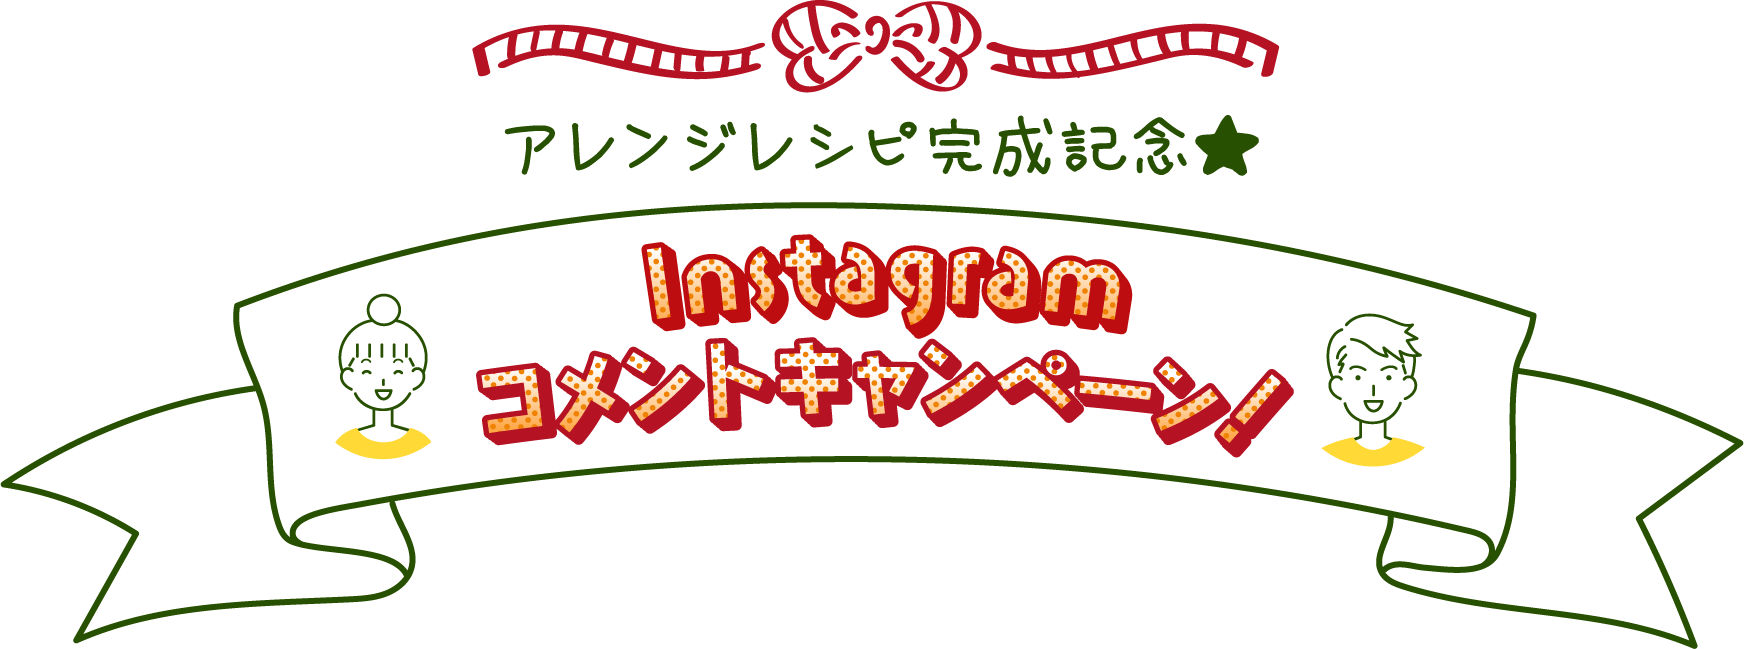 おうち吉野家Instagramコメントキャンペーン